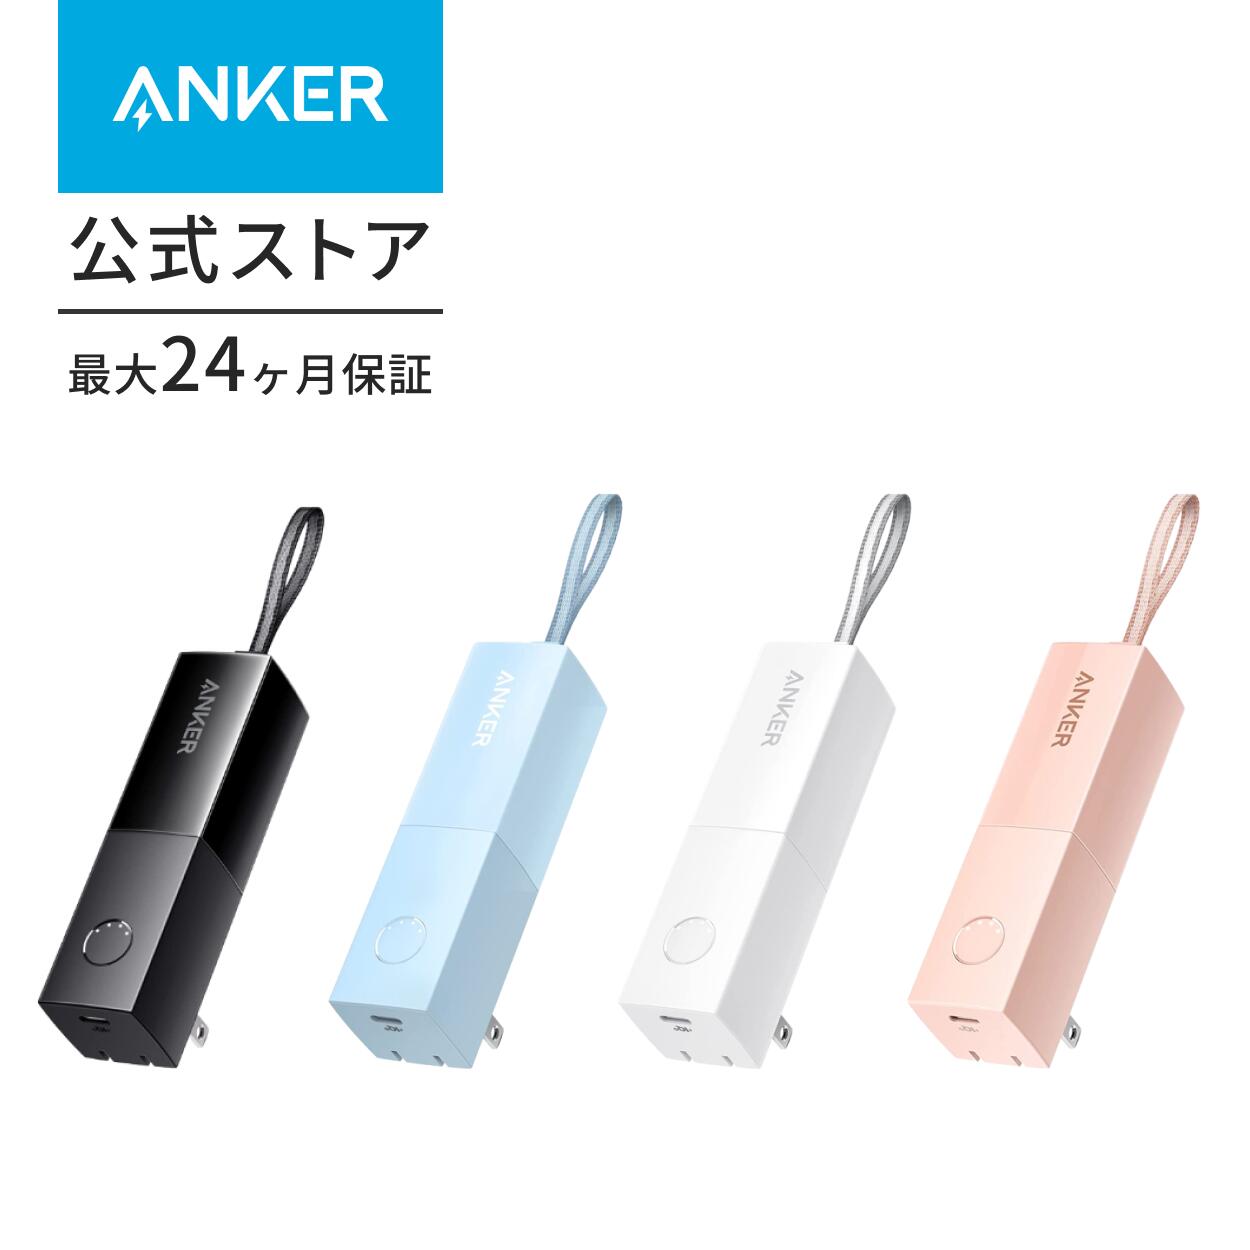 【あす楽対応】Anker 511 Power Bank (PowerCore Fusion 5000) (5000mAhモバイルバッテリー搭載 USB充電器/USB PD対応) 【PSE技術基準適合/コンセント 一体型/PowerIQ 3.0(Gen2)搭載/折りたたみ式プラグ】 iPhone13 /13 Pro Android